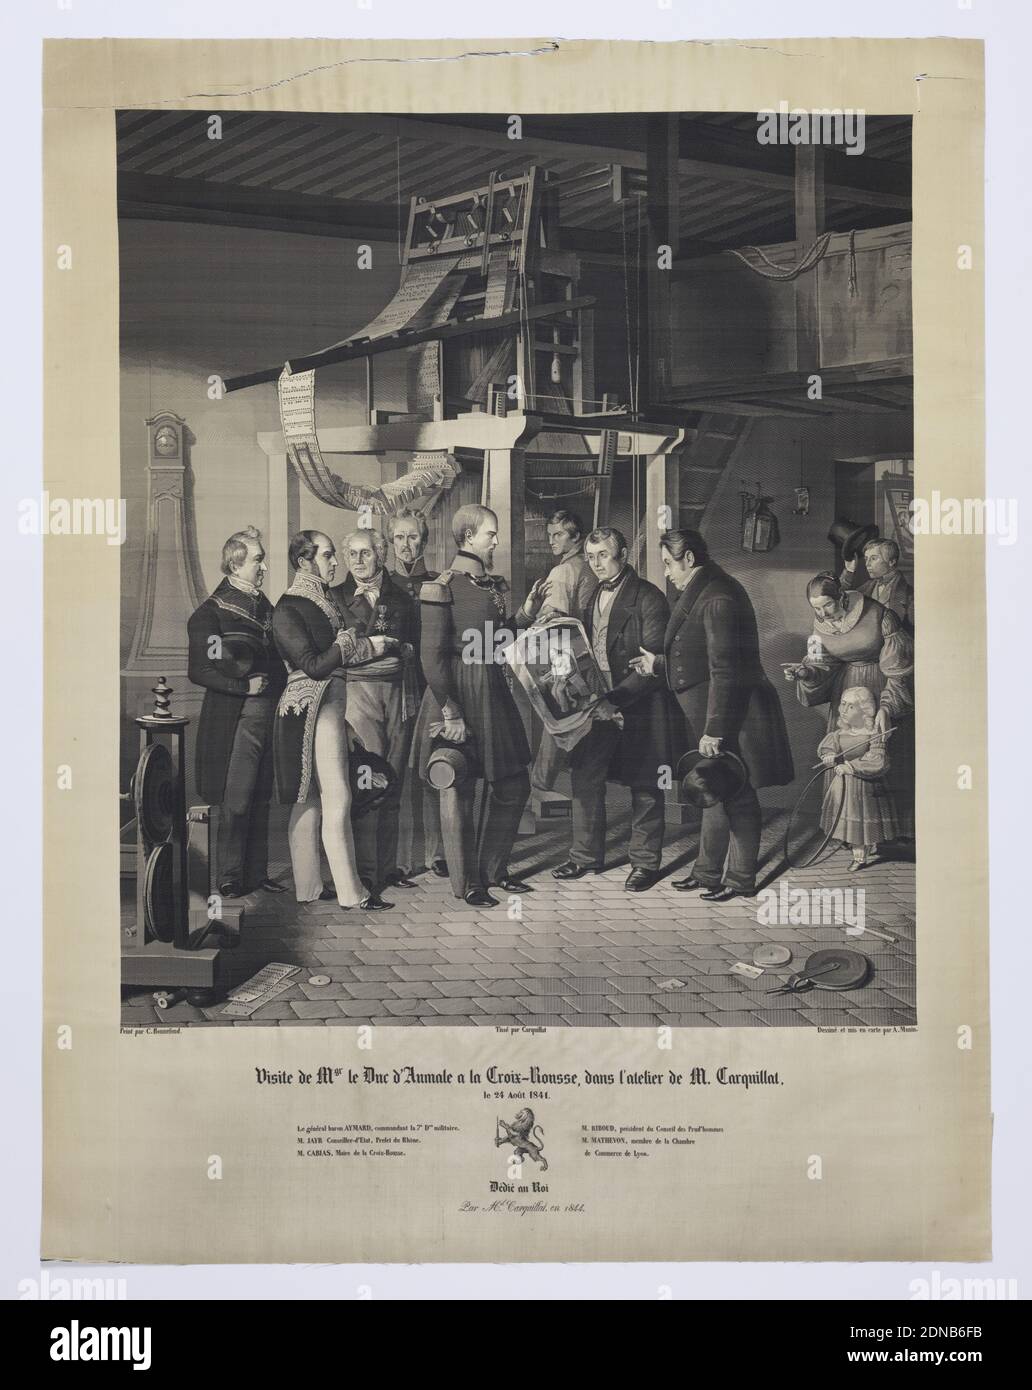 Visite de M. de Duc d'Aumale a la Croix-Rousse dans l'atelier de M. Carquillat, A. Manin, French, Claude Bonnefond, (French, 1796–1860), Medium: silk Technique: jacquard woven, M. le Duc D'Aumale à la Croix-Rousse visits the workroom of M. Carquillat. A group of men stands before the loom as M. le Duc D'Aumale à la Croix-Rousse holds a portrait of Jacquard., France, 1841, woven textiles, Picture, Picture Stock Photo